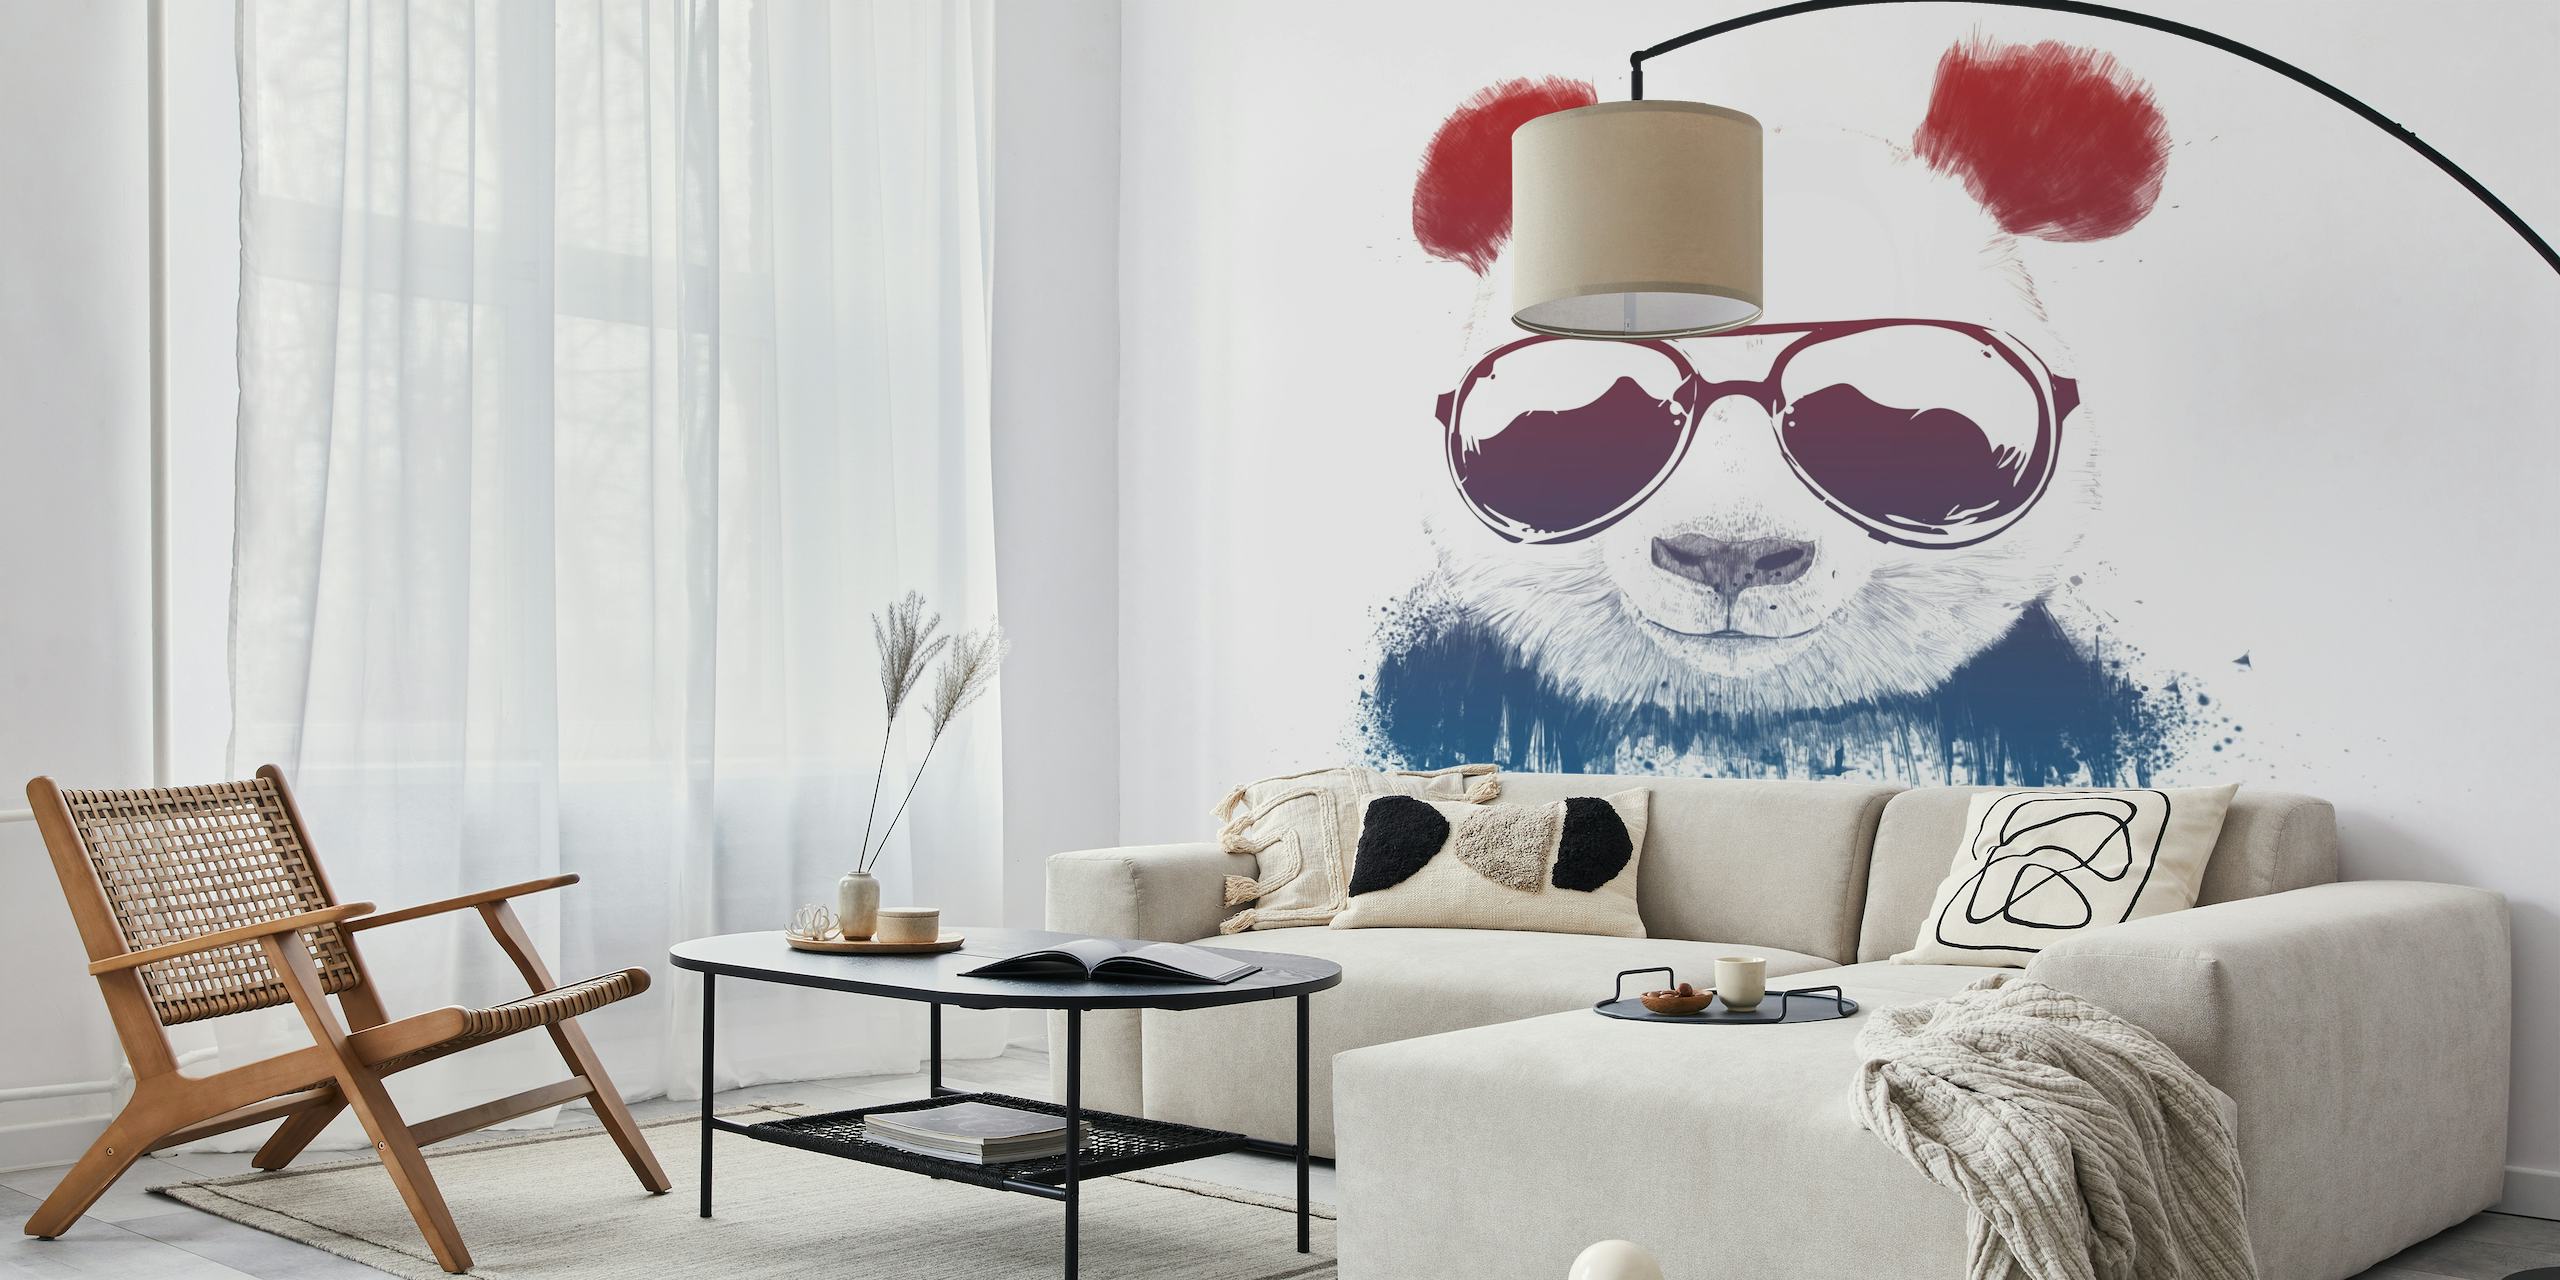 Carta da parati raffigurante un elegante panda con occhiali da sole e orecchie rosse su uno sfondo bianco con gocce di vernice blu